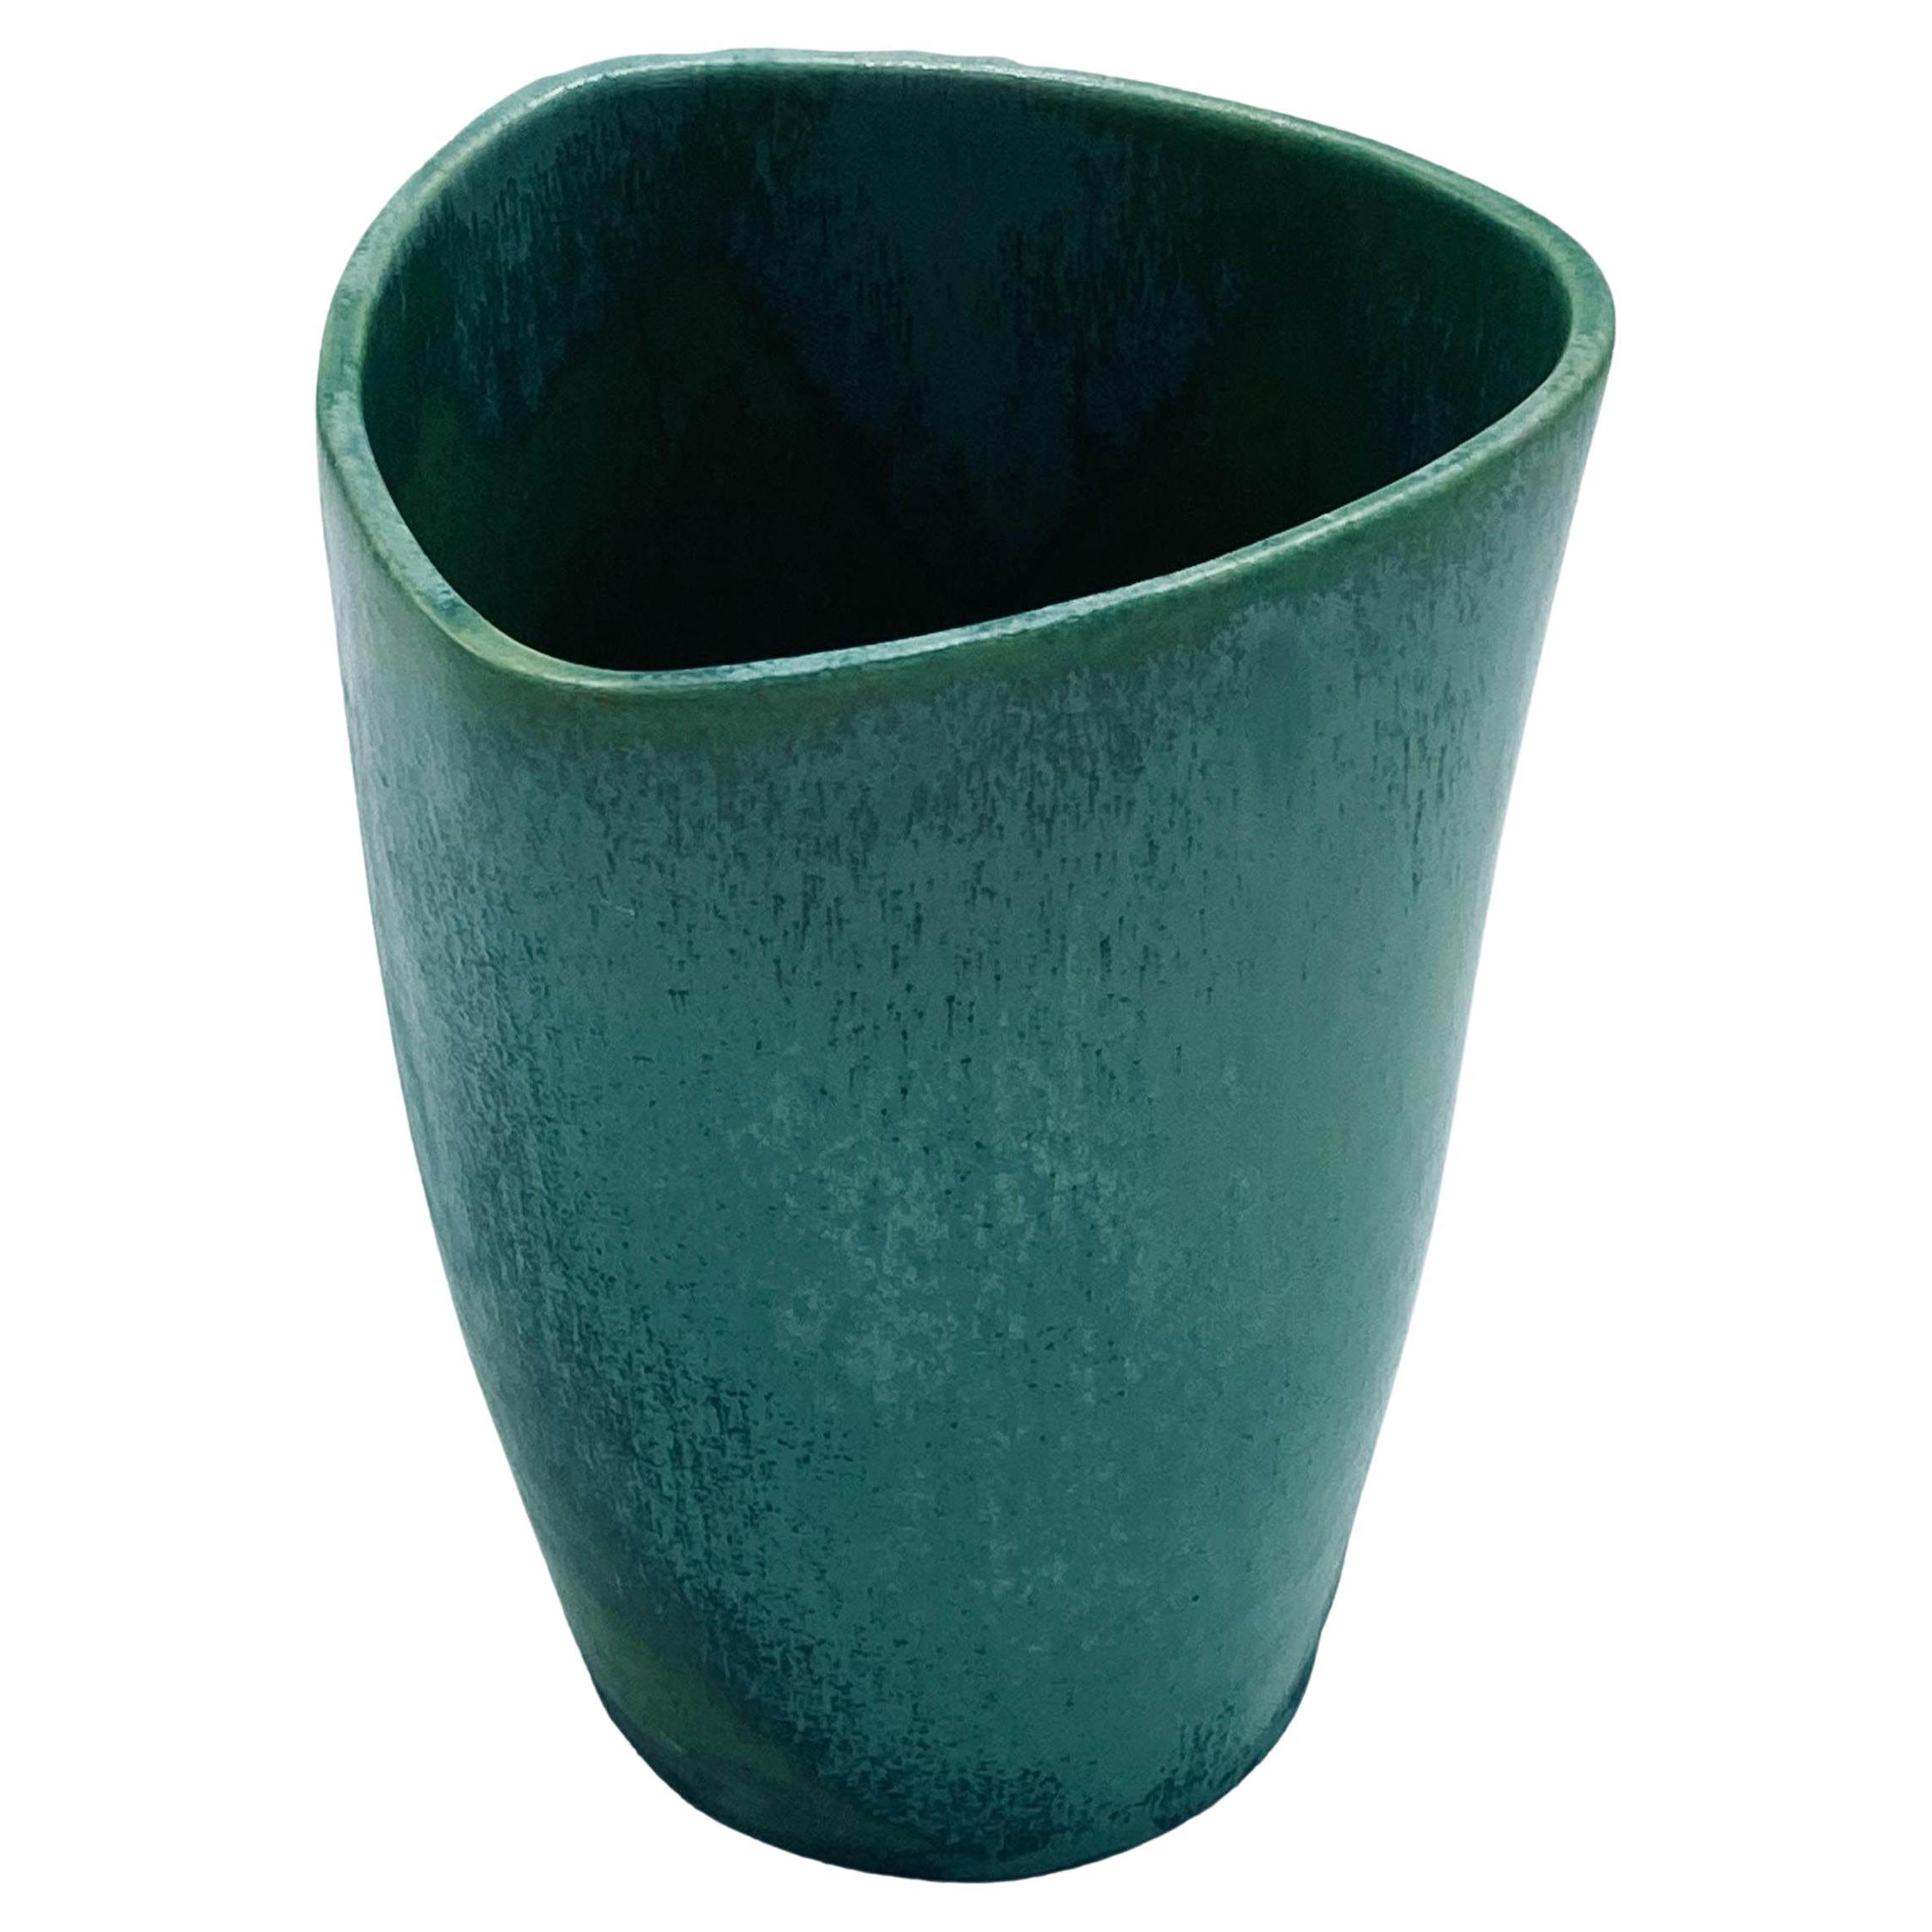 Guido Andlovitz Lavenia, Elegant Vase in Glazed Ceramic, 1950s